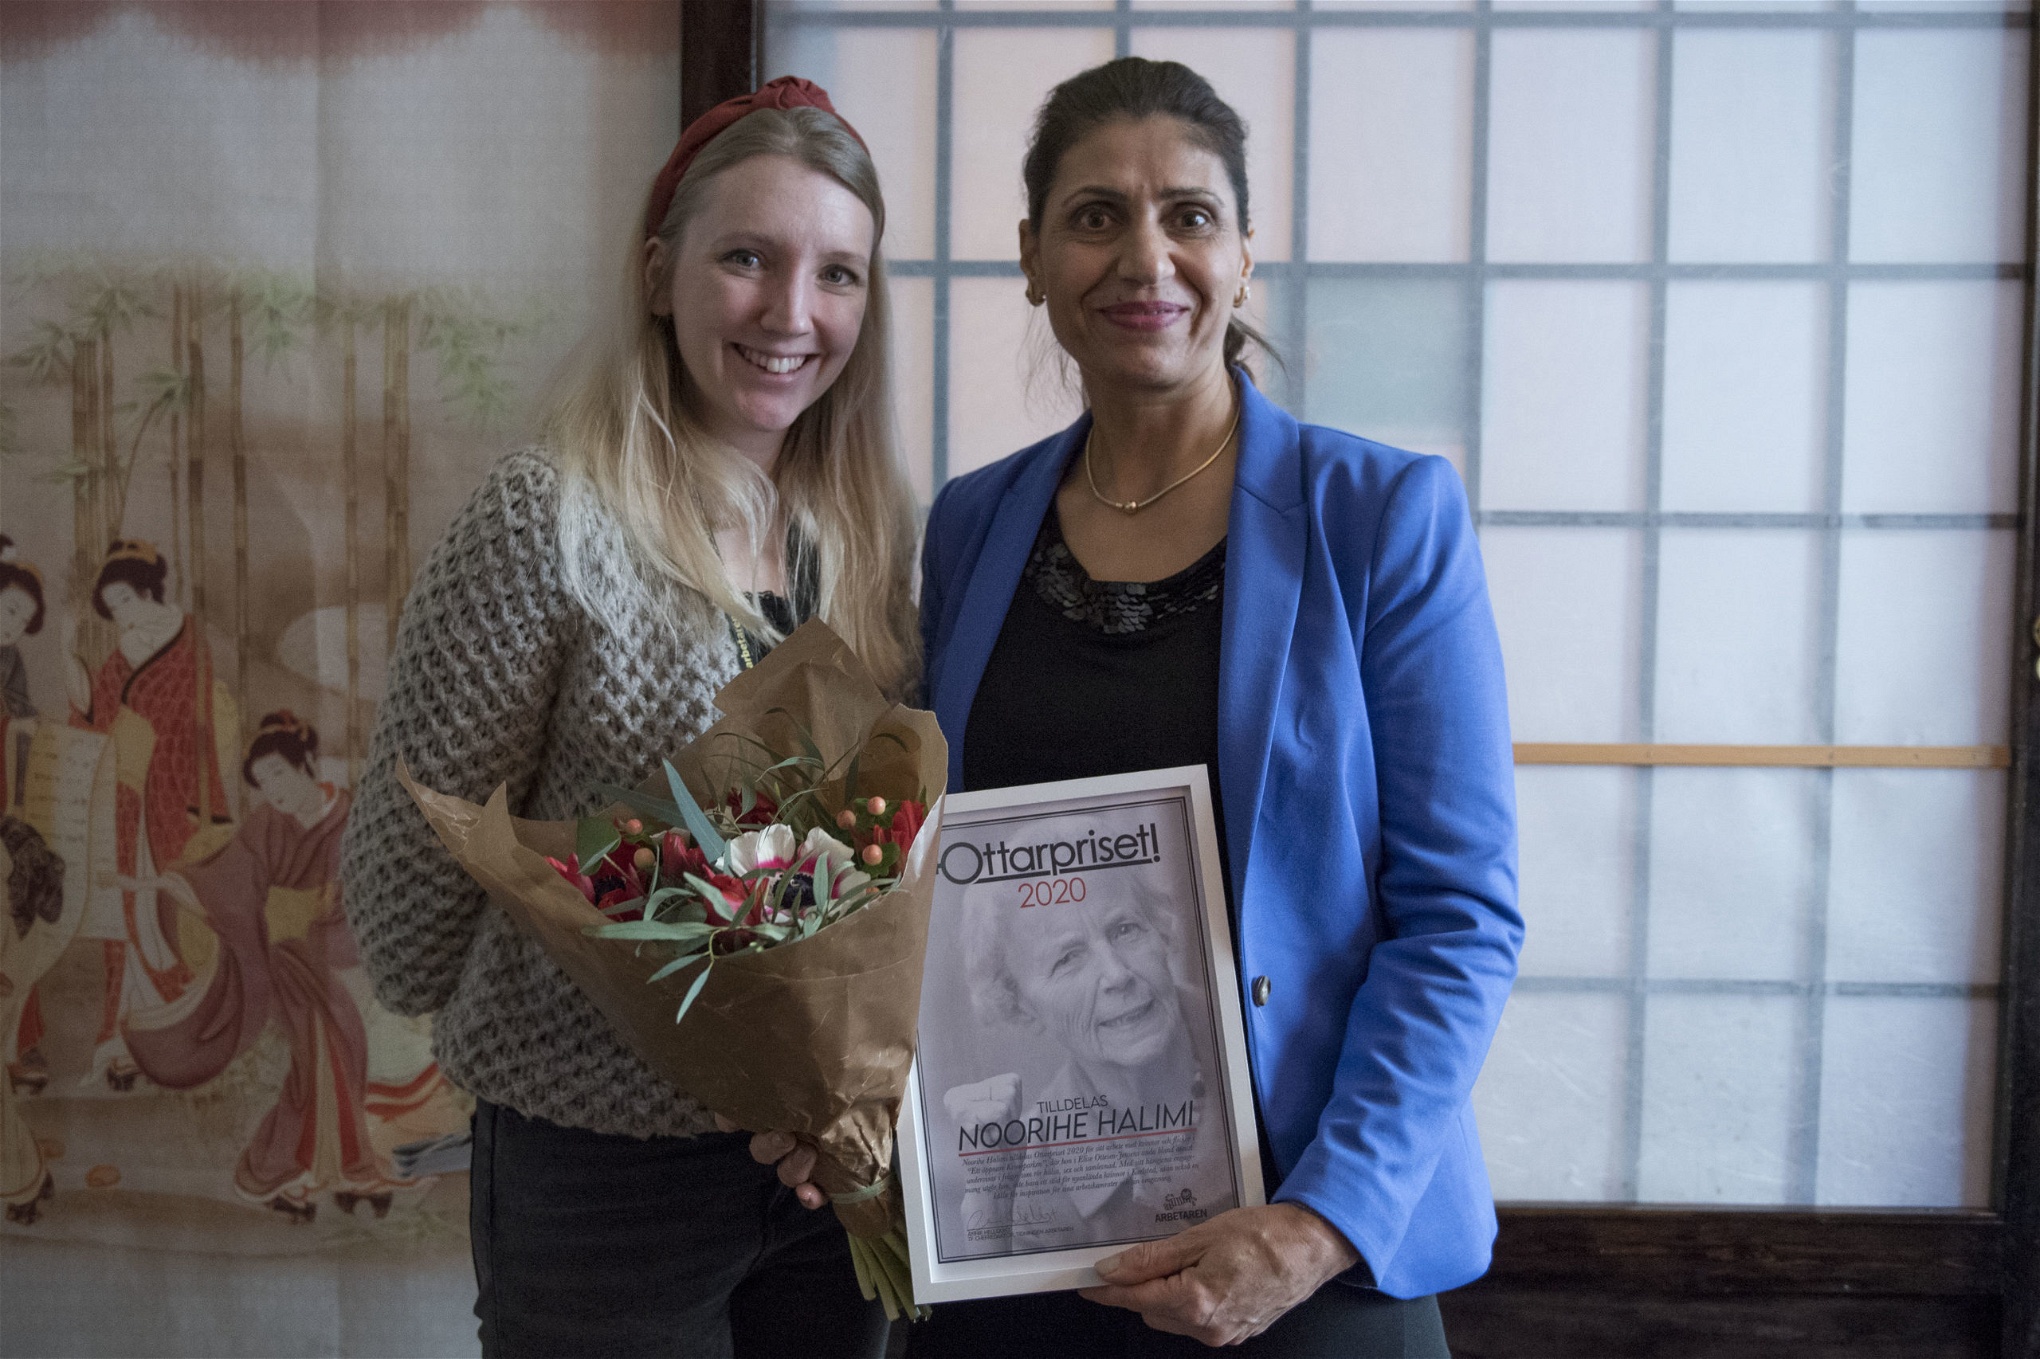 Noorihe Halimi tar emot Ottarpriset av Arbetarens chefredaktör Annie Hellquist.